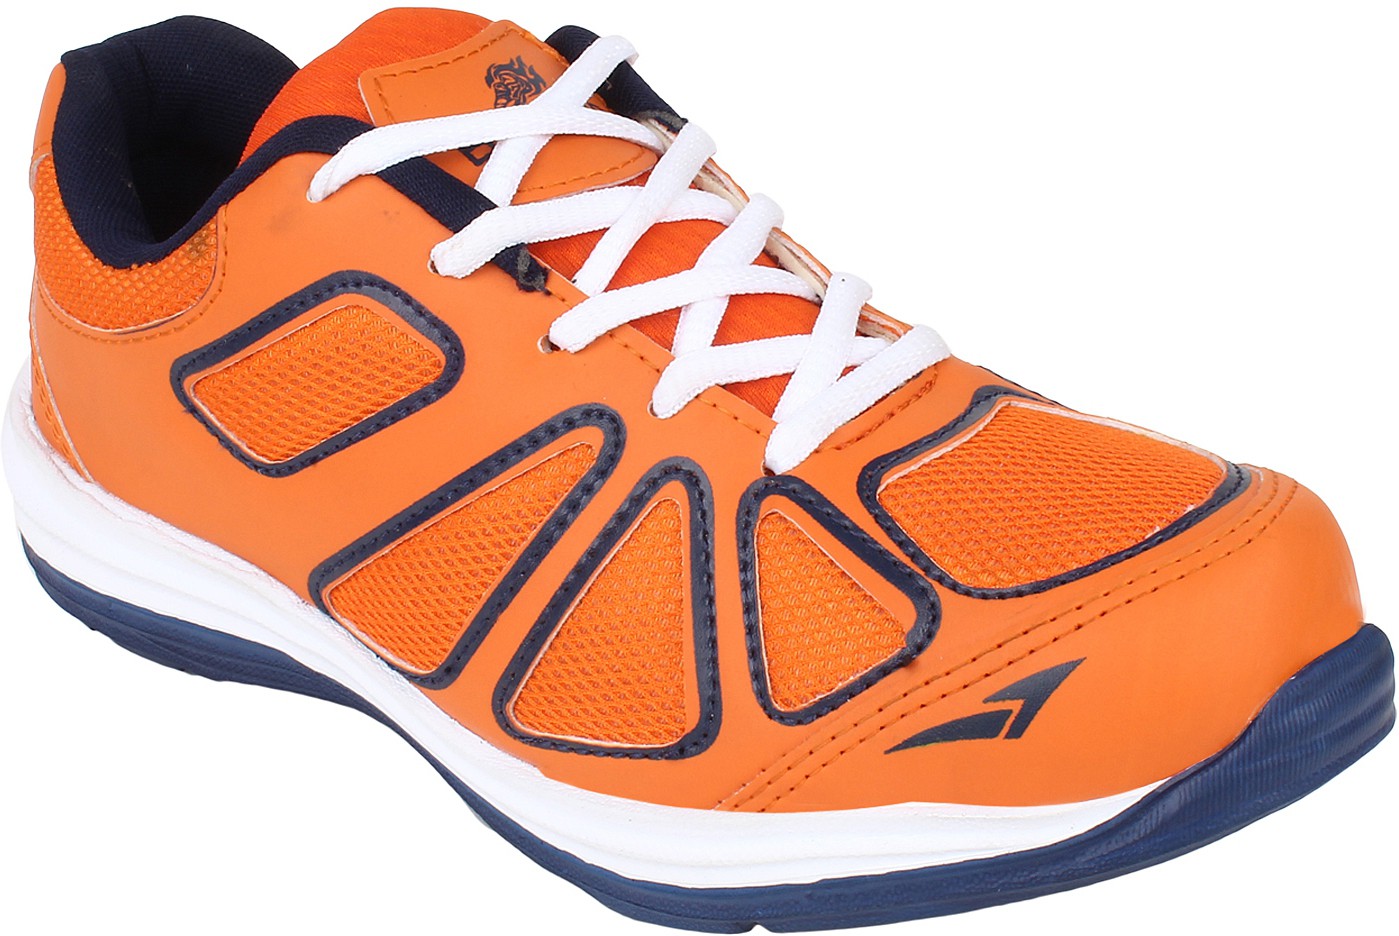 Bostan Running shoe(Orange)